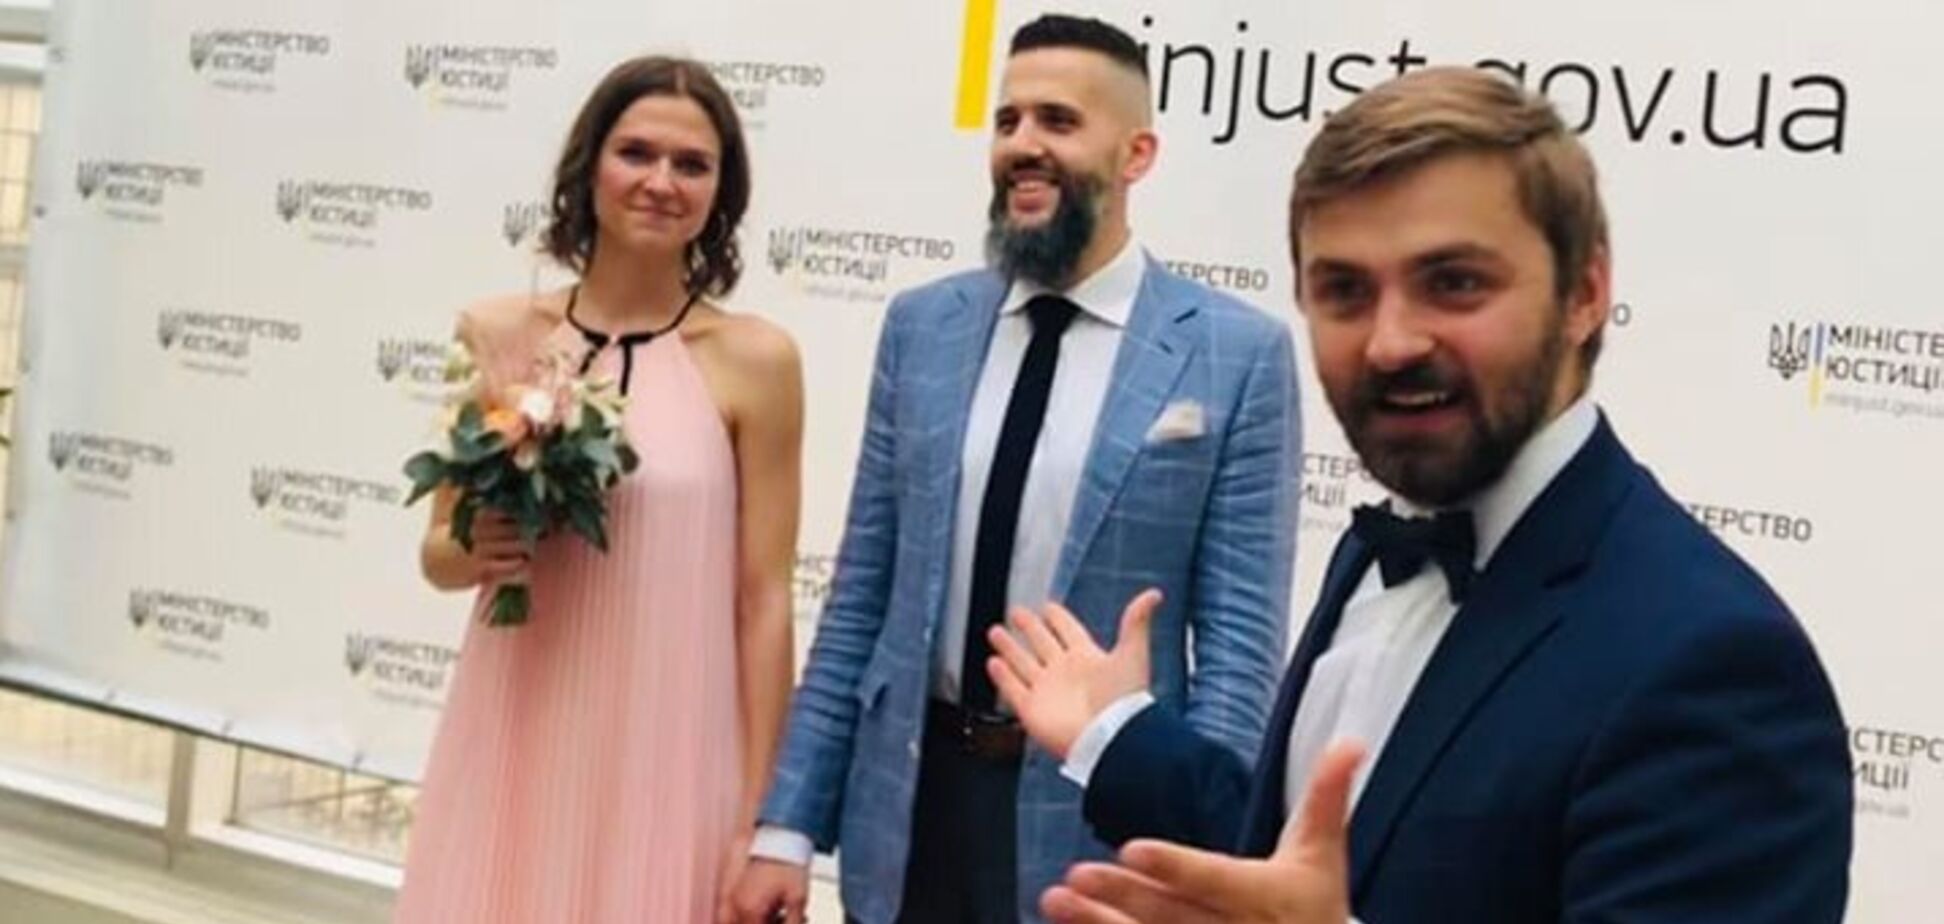 Главный таможенник Украины женился: появились фото со свадьбы